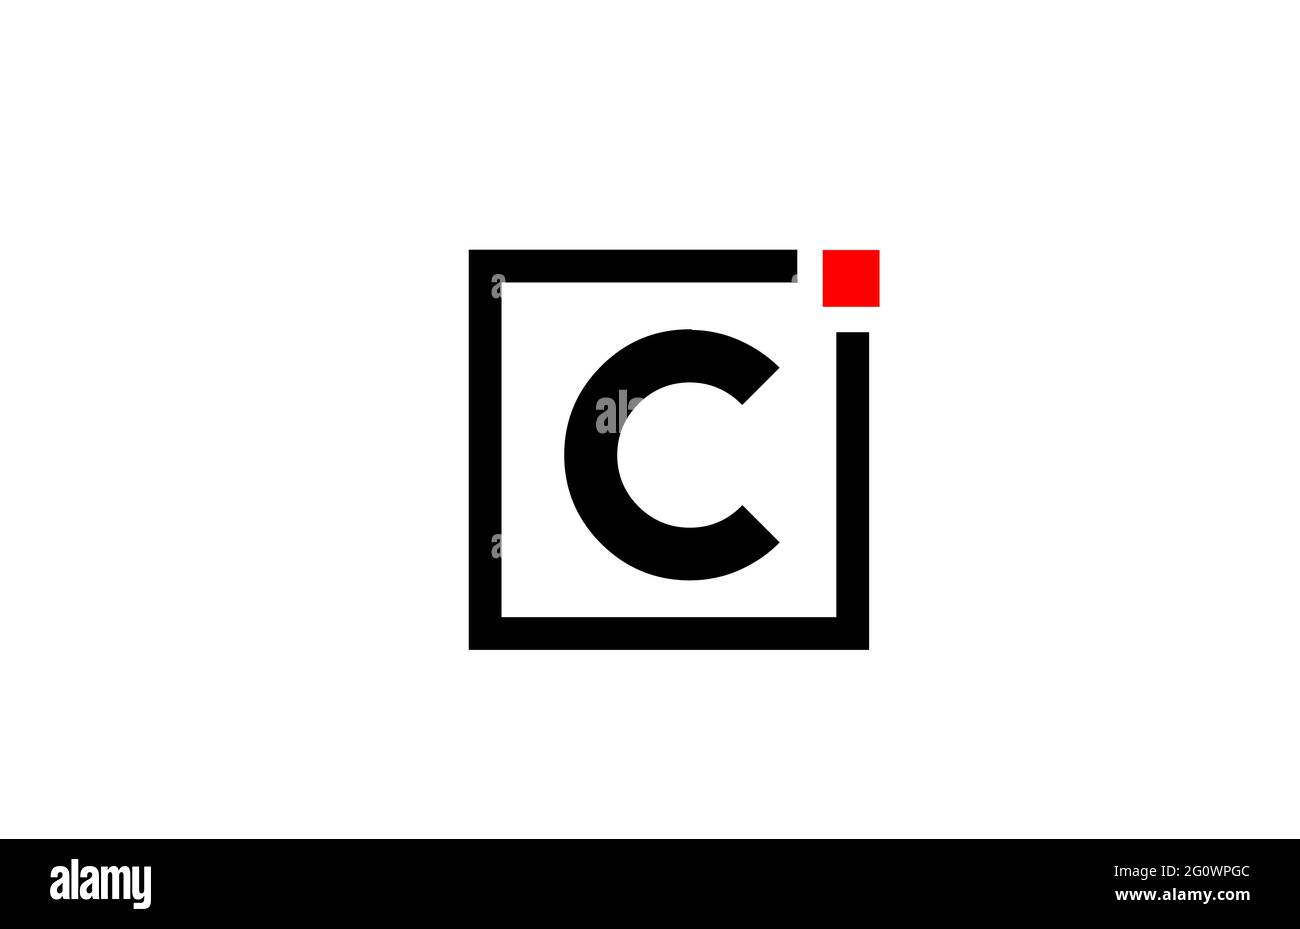 Logo con l'icona della lettera C in bianco e nero. Design aziendale e aziendale con punto quadrato e rosso. Modello di identità aziendale creativa Foto Stock